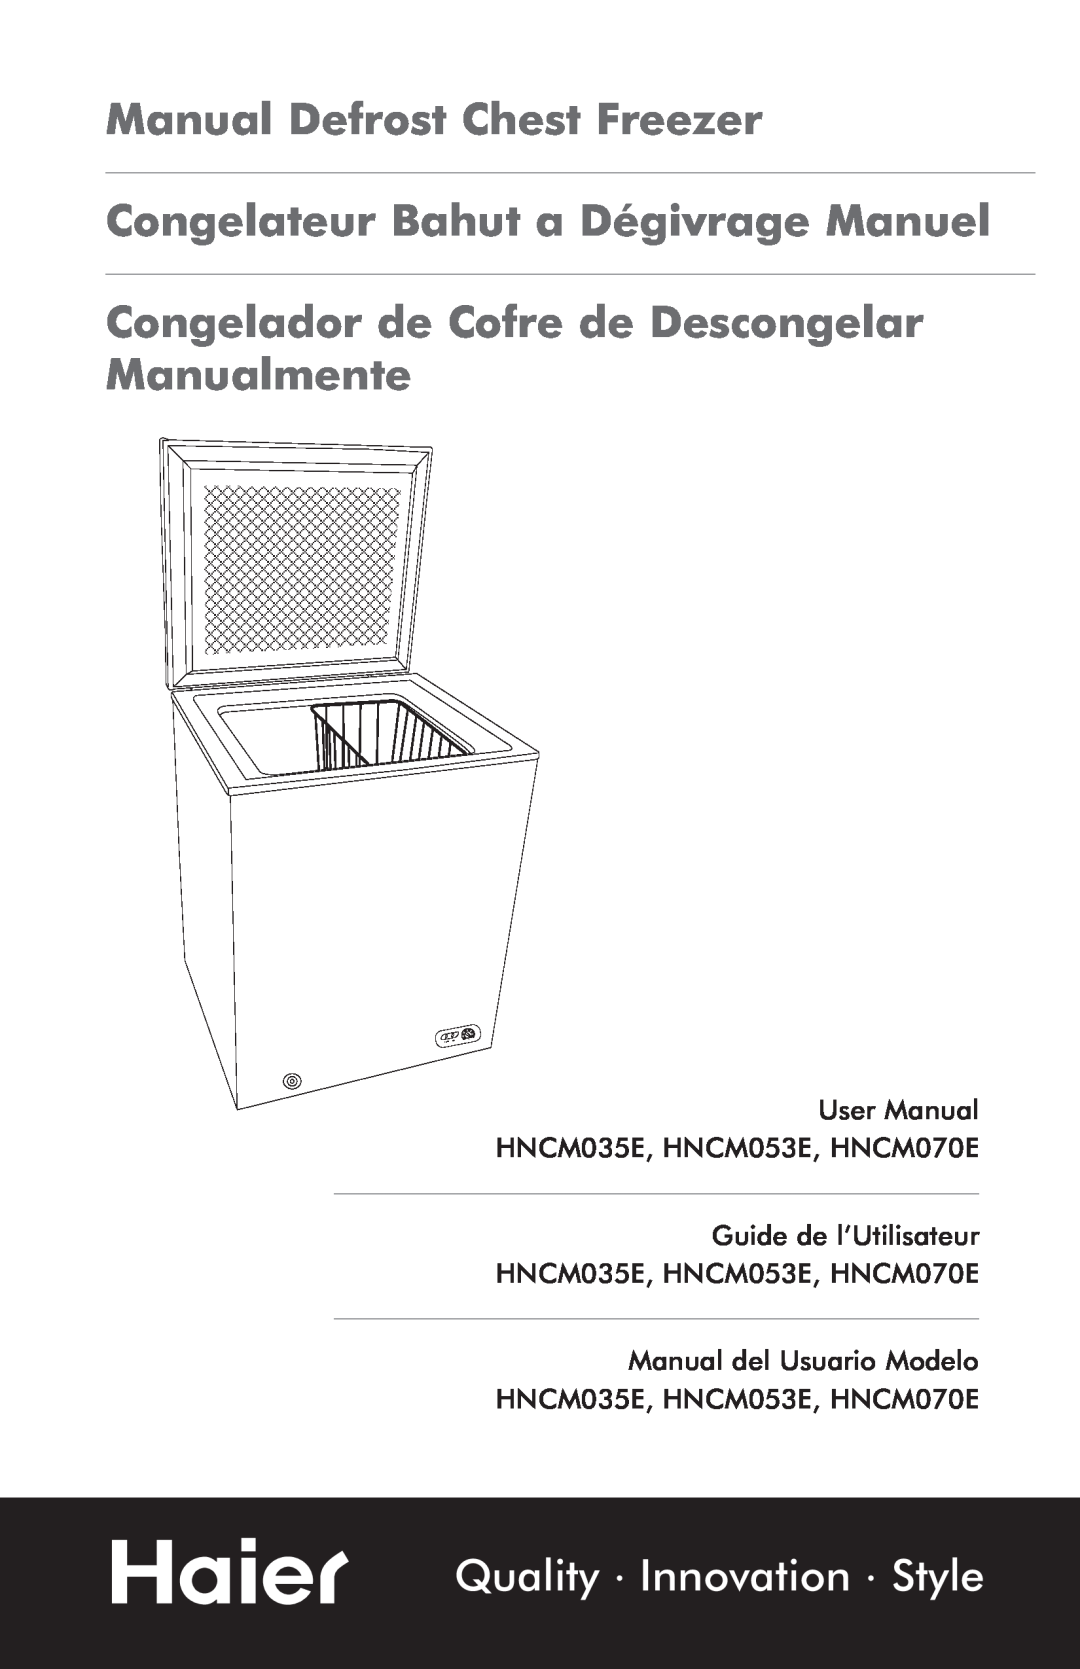 Haier HNCM035E user manual Manual Defrost Chest Freezer, Congelateur Bahut a Dégivrage Manuel, Quality Innovation Style 